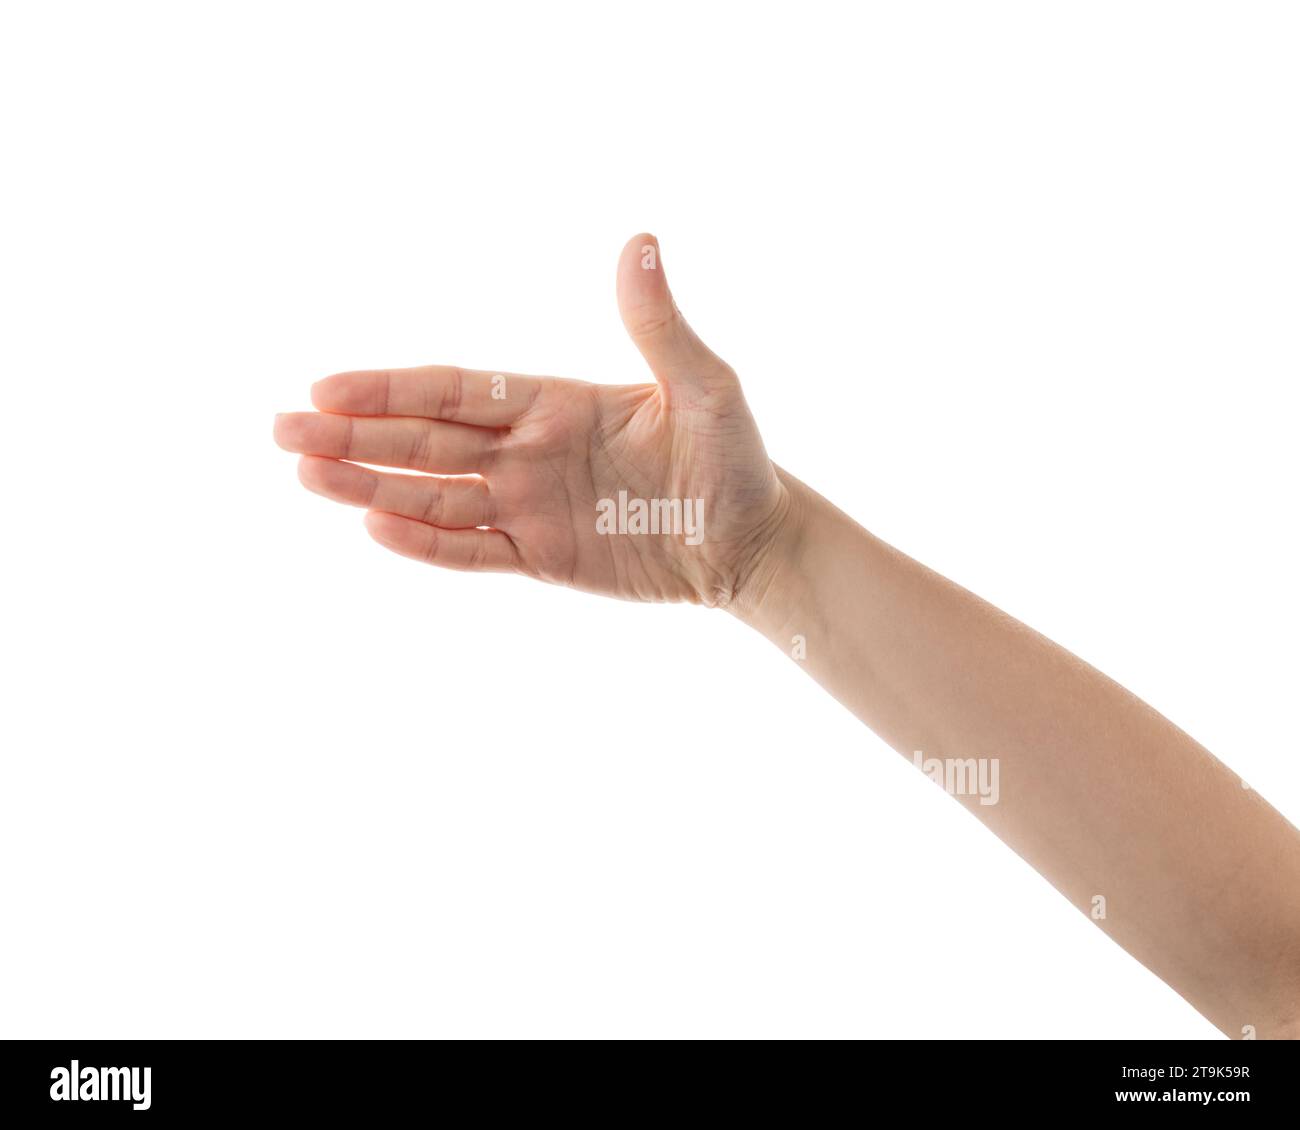 Giovane donna mano per stretta di mano isolata su sfondo bianco Foto Stock